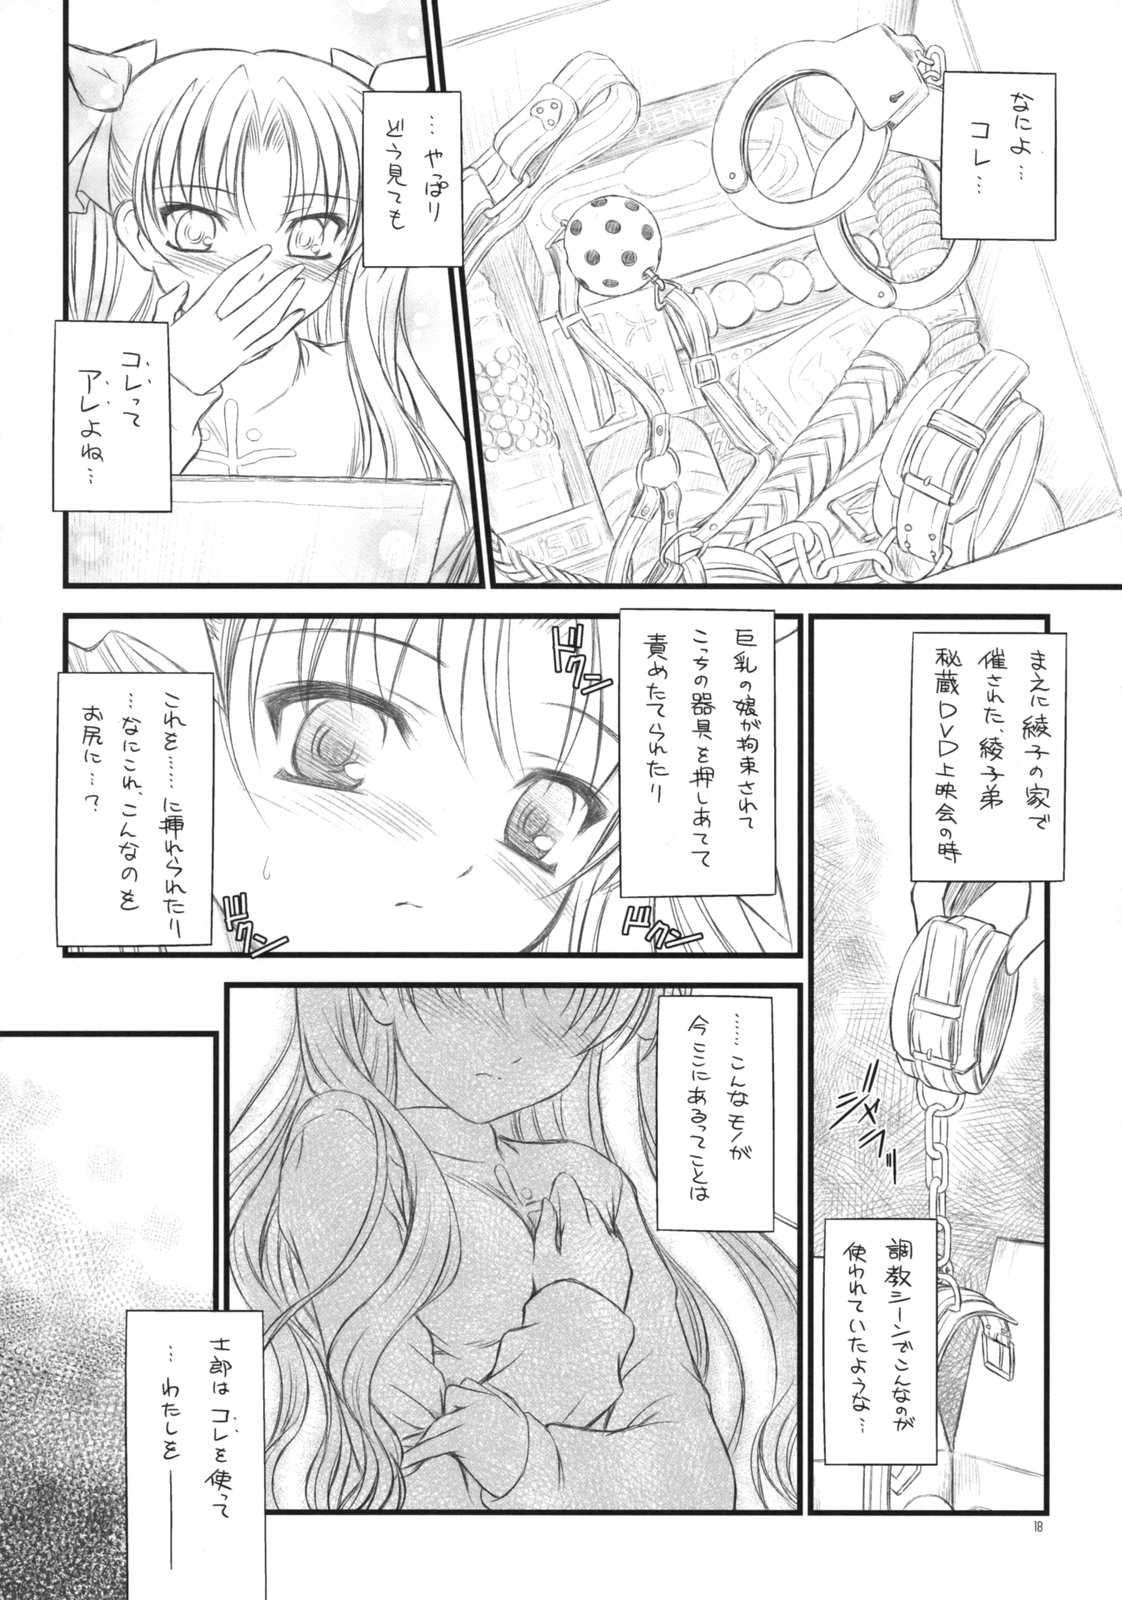 (COMIC1☆2)[[Yakan Honpo &amp; Yakan Hikou (Inoue Tommy)] Prunus Persica 1.5 (Fate/stay night) (COMIC1☆2)[薬缶本舗 ＆ 夜間飛行 (いのうえとみい)] Prunus Persica 1.5 (Fate/stay night)